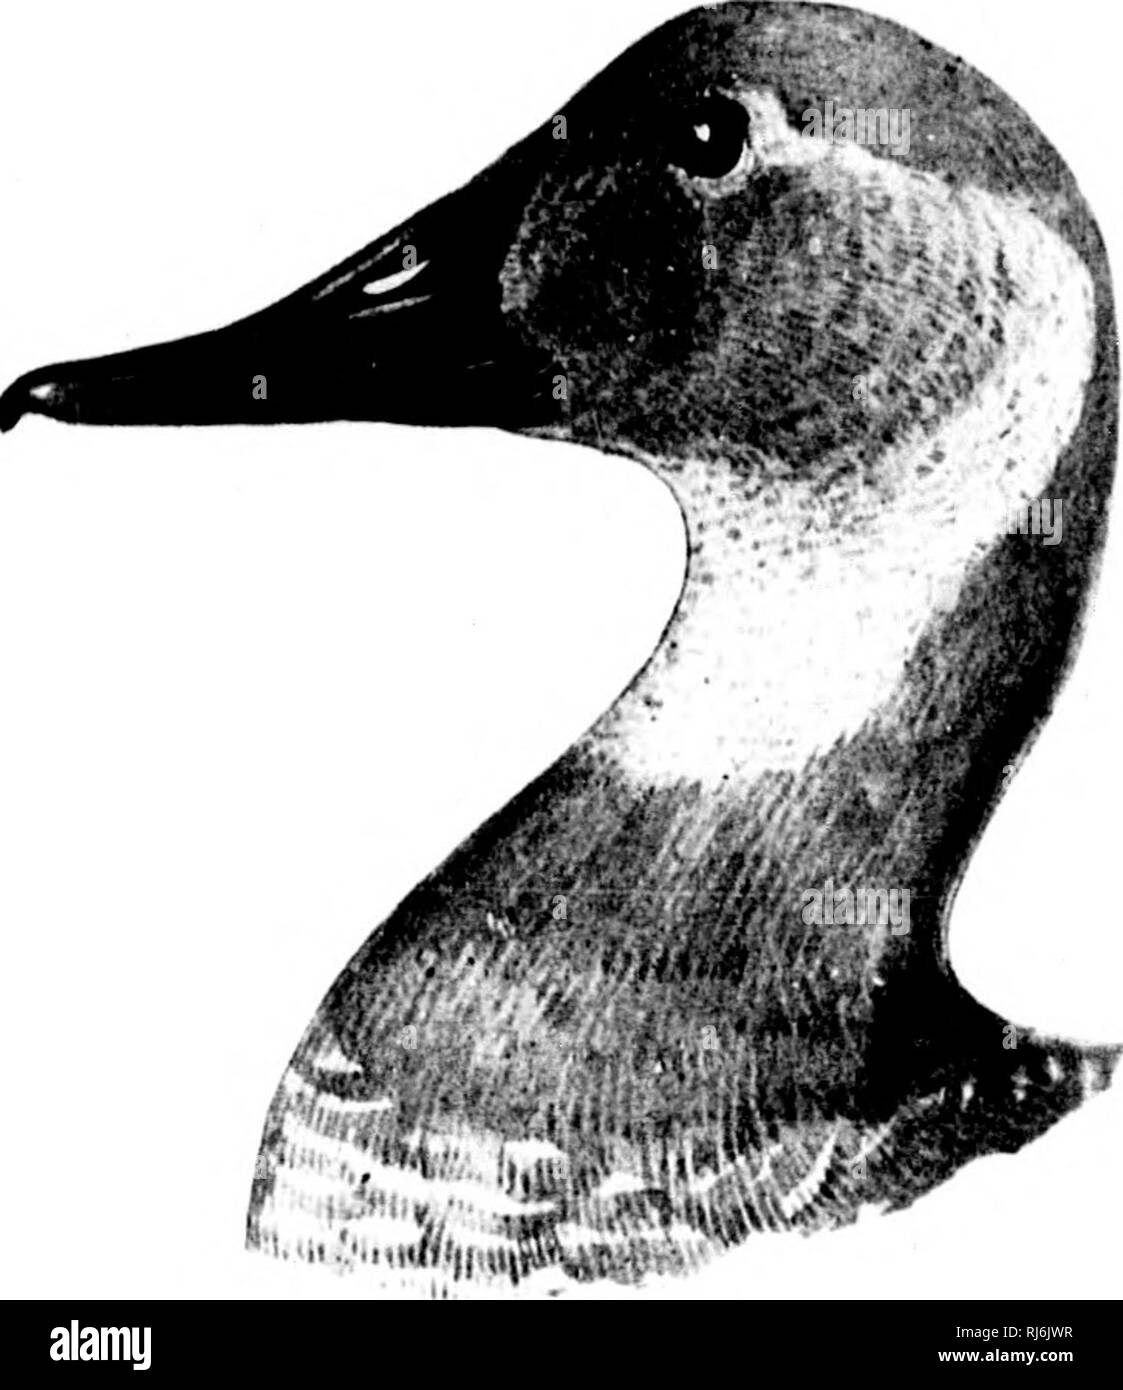 . Come conoscere le anatre e oche e cigni del Nord America [microformati] : tutte le specie che sono raggruppati secondo la dimensione e il colore. Anatre e oche; cigni; uccelli; Canards; Oies; Cygnes; Oiseaux. Una V lli.Ho xiiili-iirriii (iii;ili"). (L-'cMMlr.) AYTHYA VALLISNEKIA (///A ). Tela-back di anatra. Un'liiit iii'iii : testa e collo, rufous limwii, ln'cciiniii;;' dii-ky cm ilic cimiuh mihI cliiii: ili ti ri'MSL Mini uppiT purl inn nl' ilii' ii.'irU, hhu-ki-li: se-l nl' iipiicr pari- ami wiii^' ccixitn sliduin. linea, wiiv&GT; liiii's dl' lij.-icK. ^ciii'i'al' aiipcaraiici liciiii;- mi^rav isli; lirlly. uliiic. Ho Foto Stock